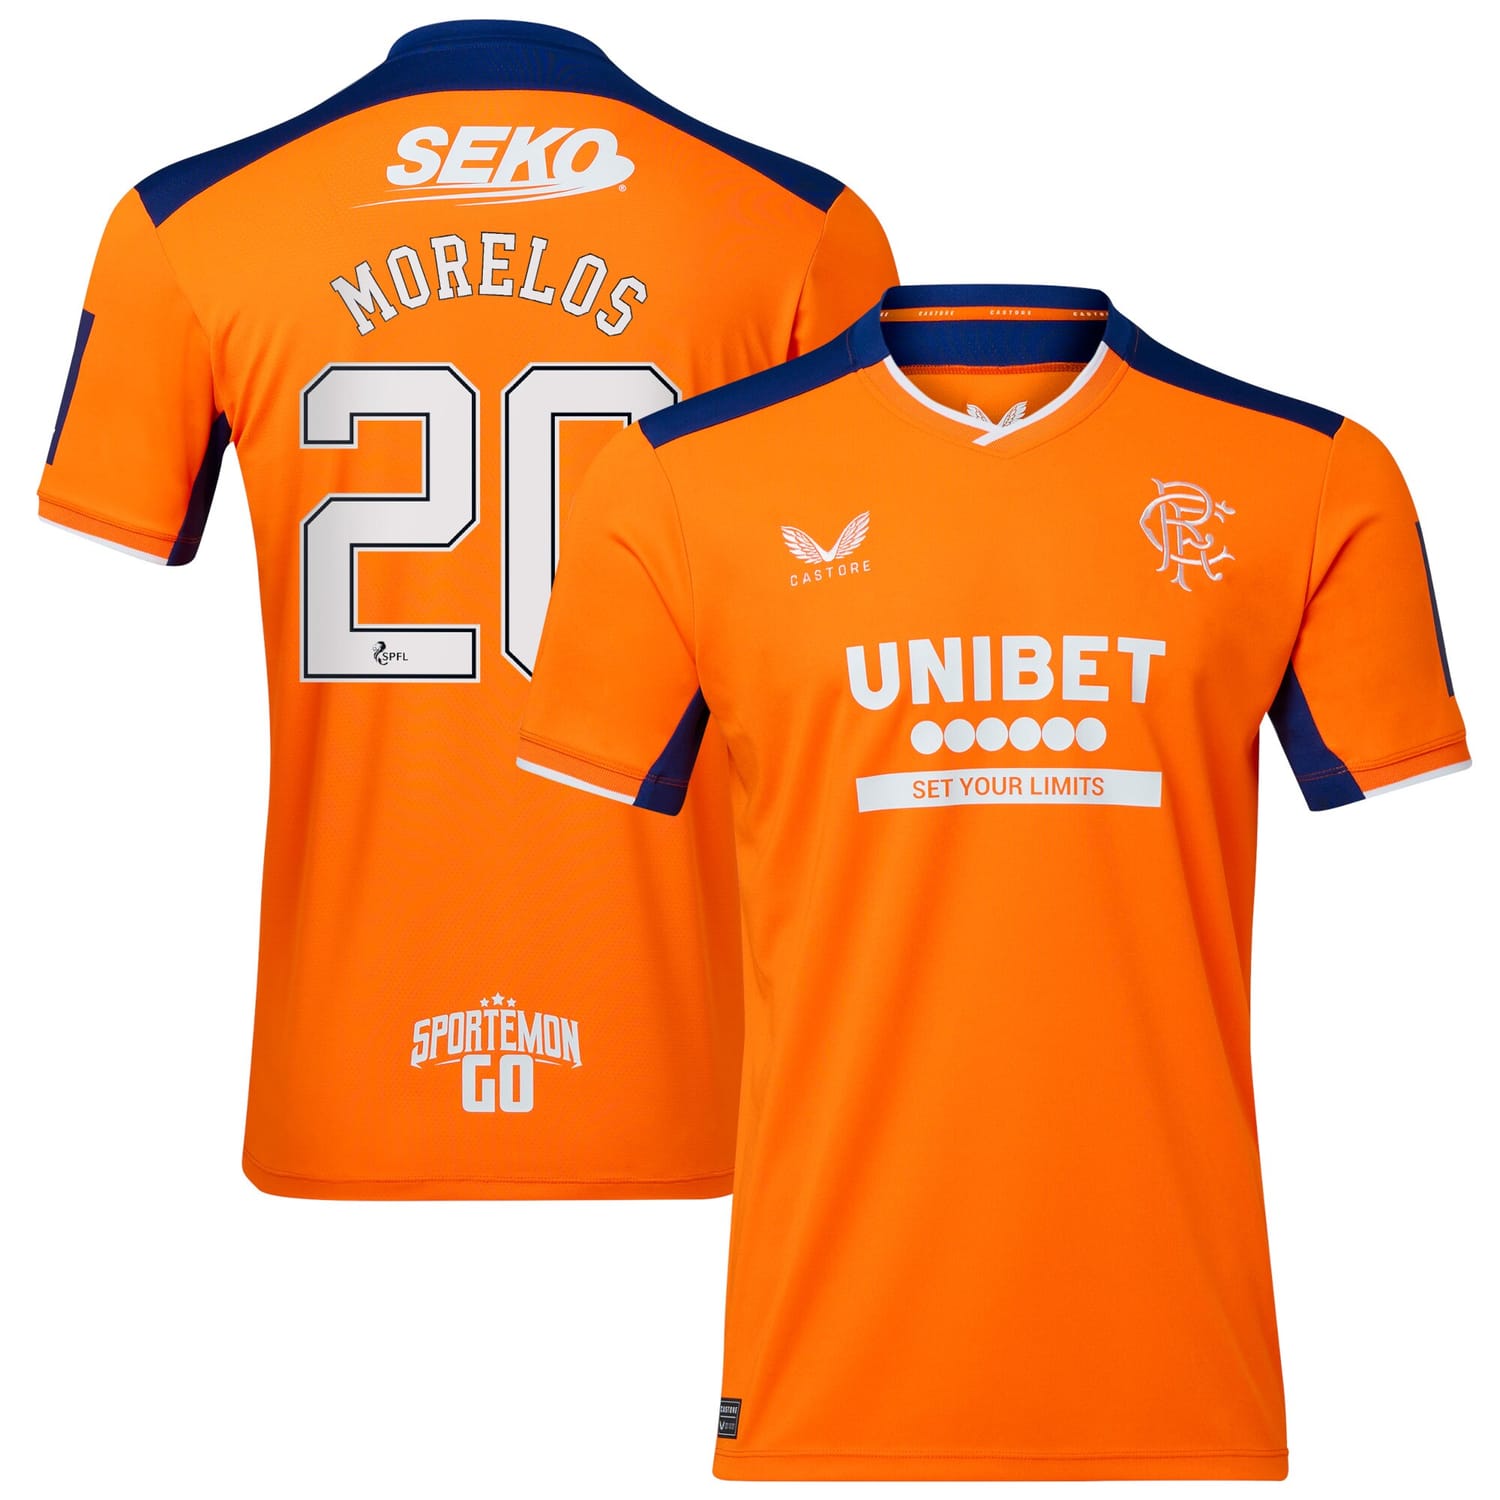 Scottish Premiership Rangers FC Third Jersey Shirt 2022-23 player Morelos 20 printing for Men